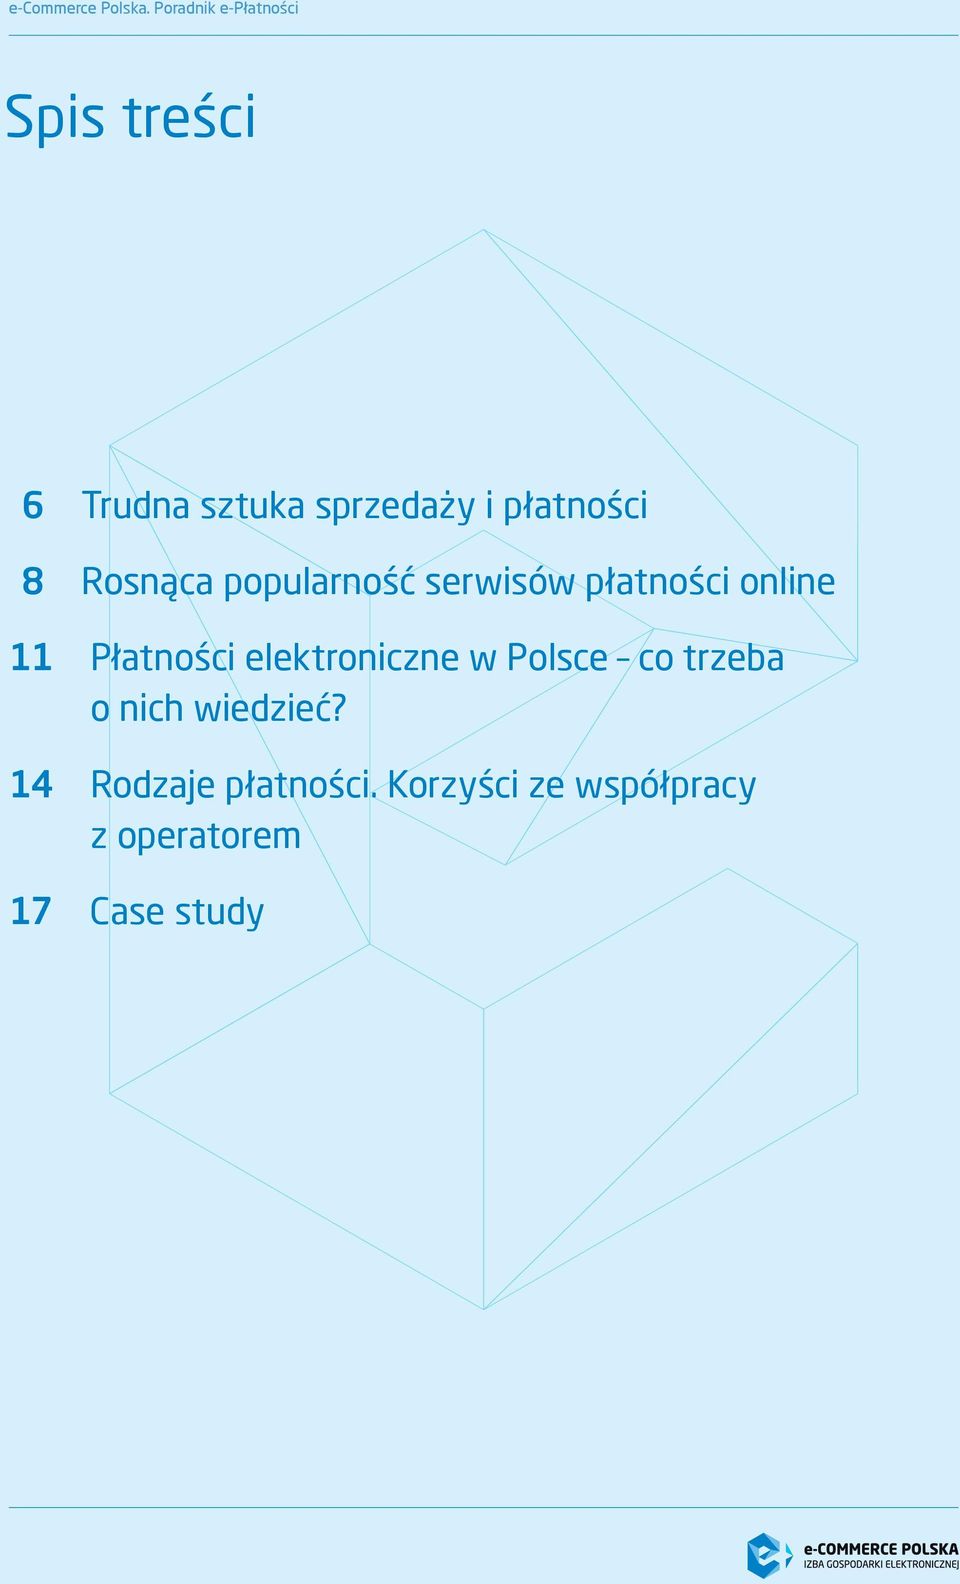 Płatności elektroniczne w Polsce co trzeba o nich